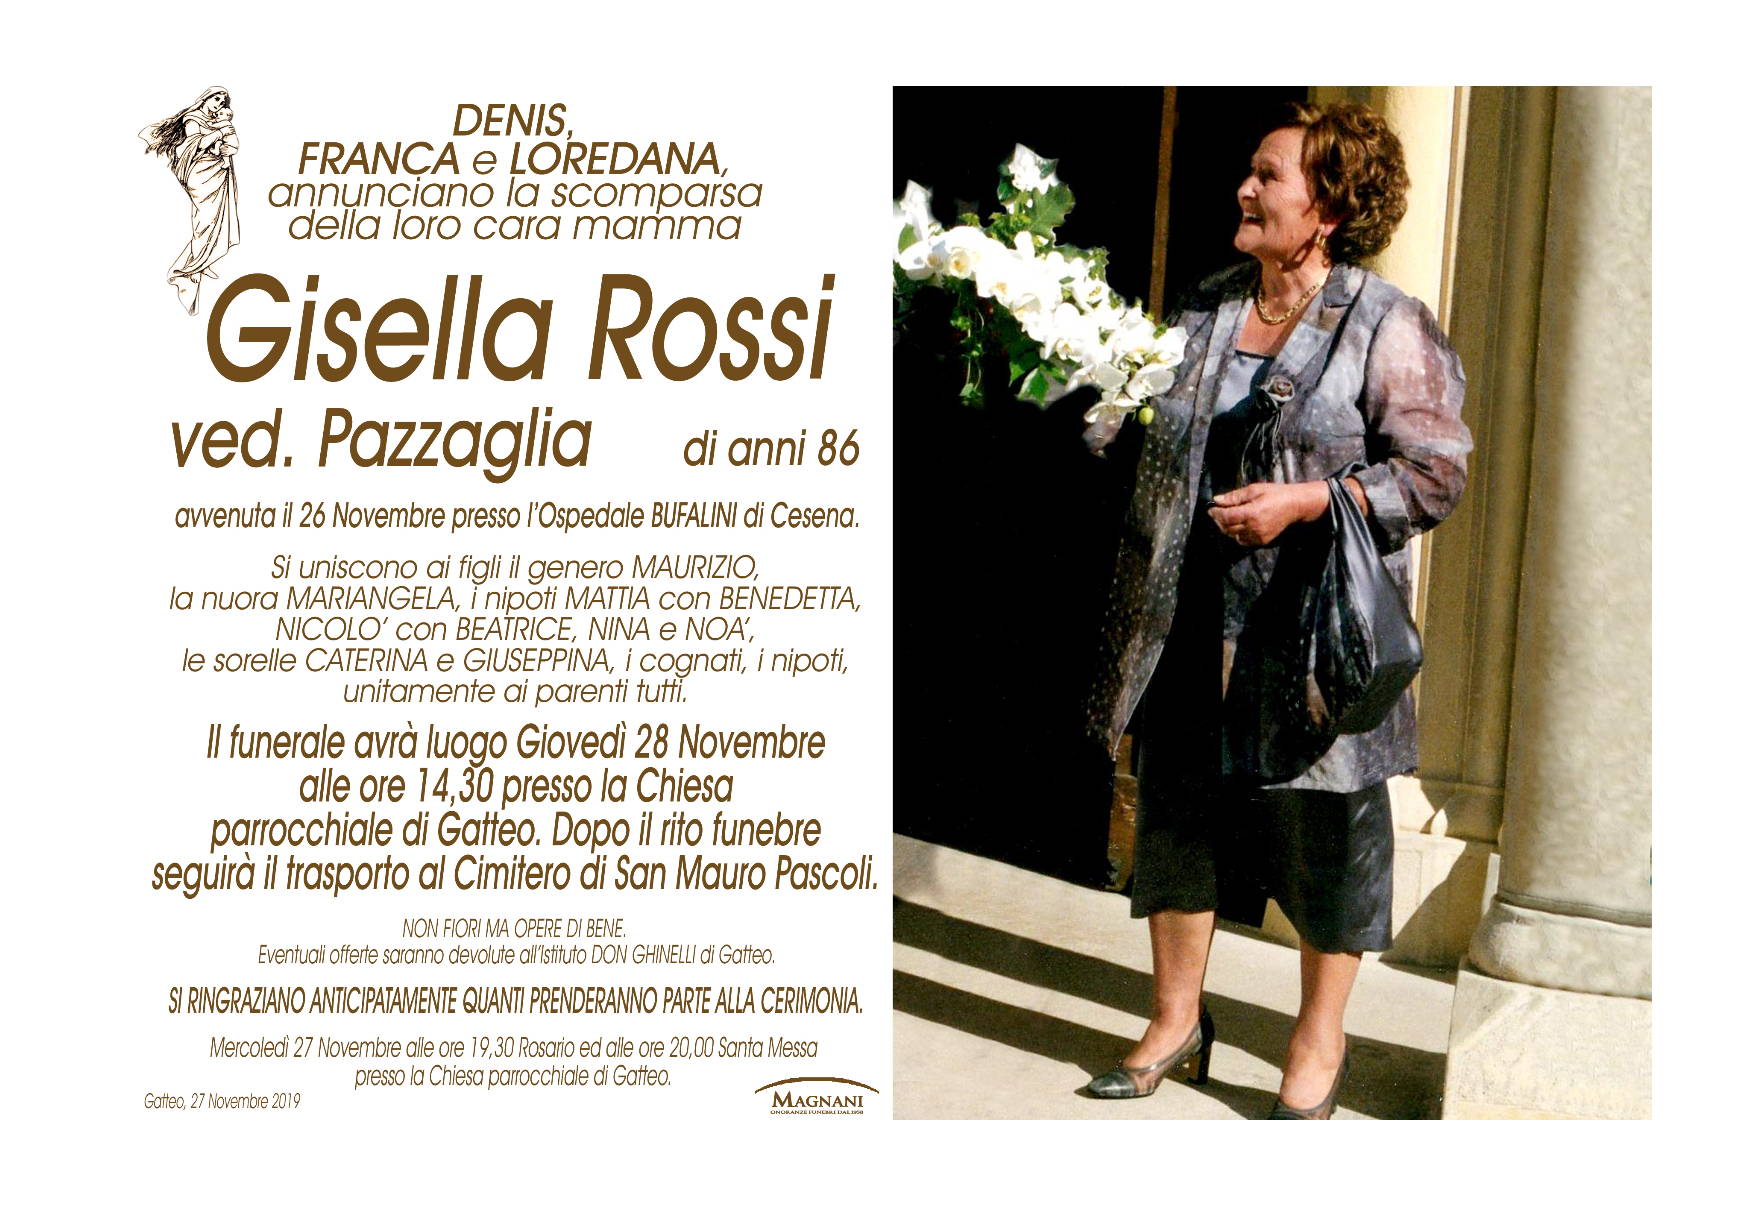 Gisella Rossi